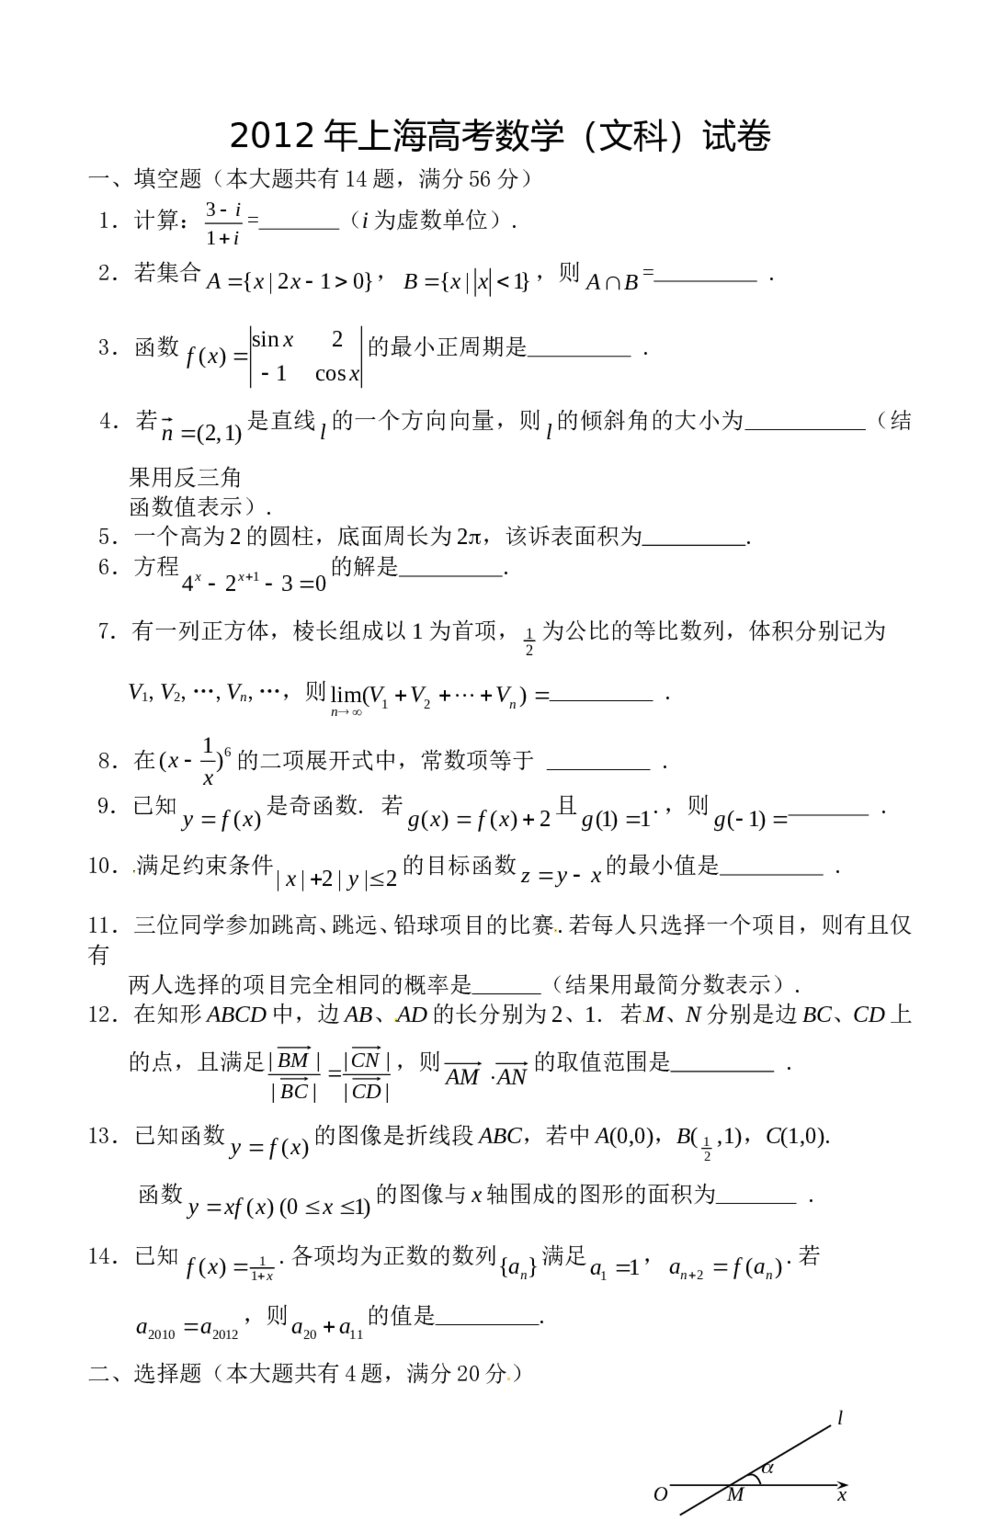 2012上海高考(文科)数学试题解答